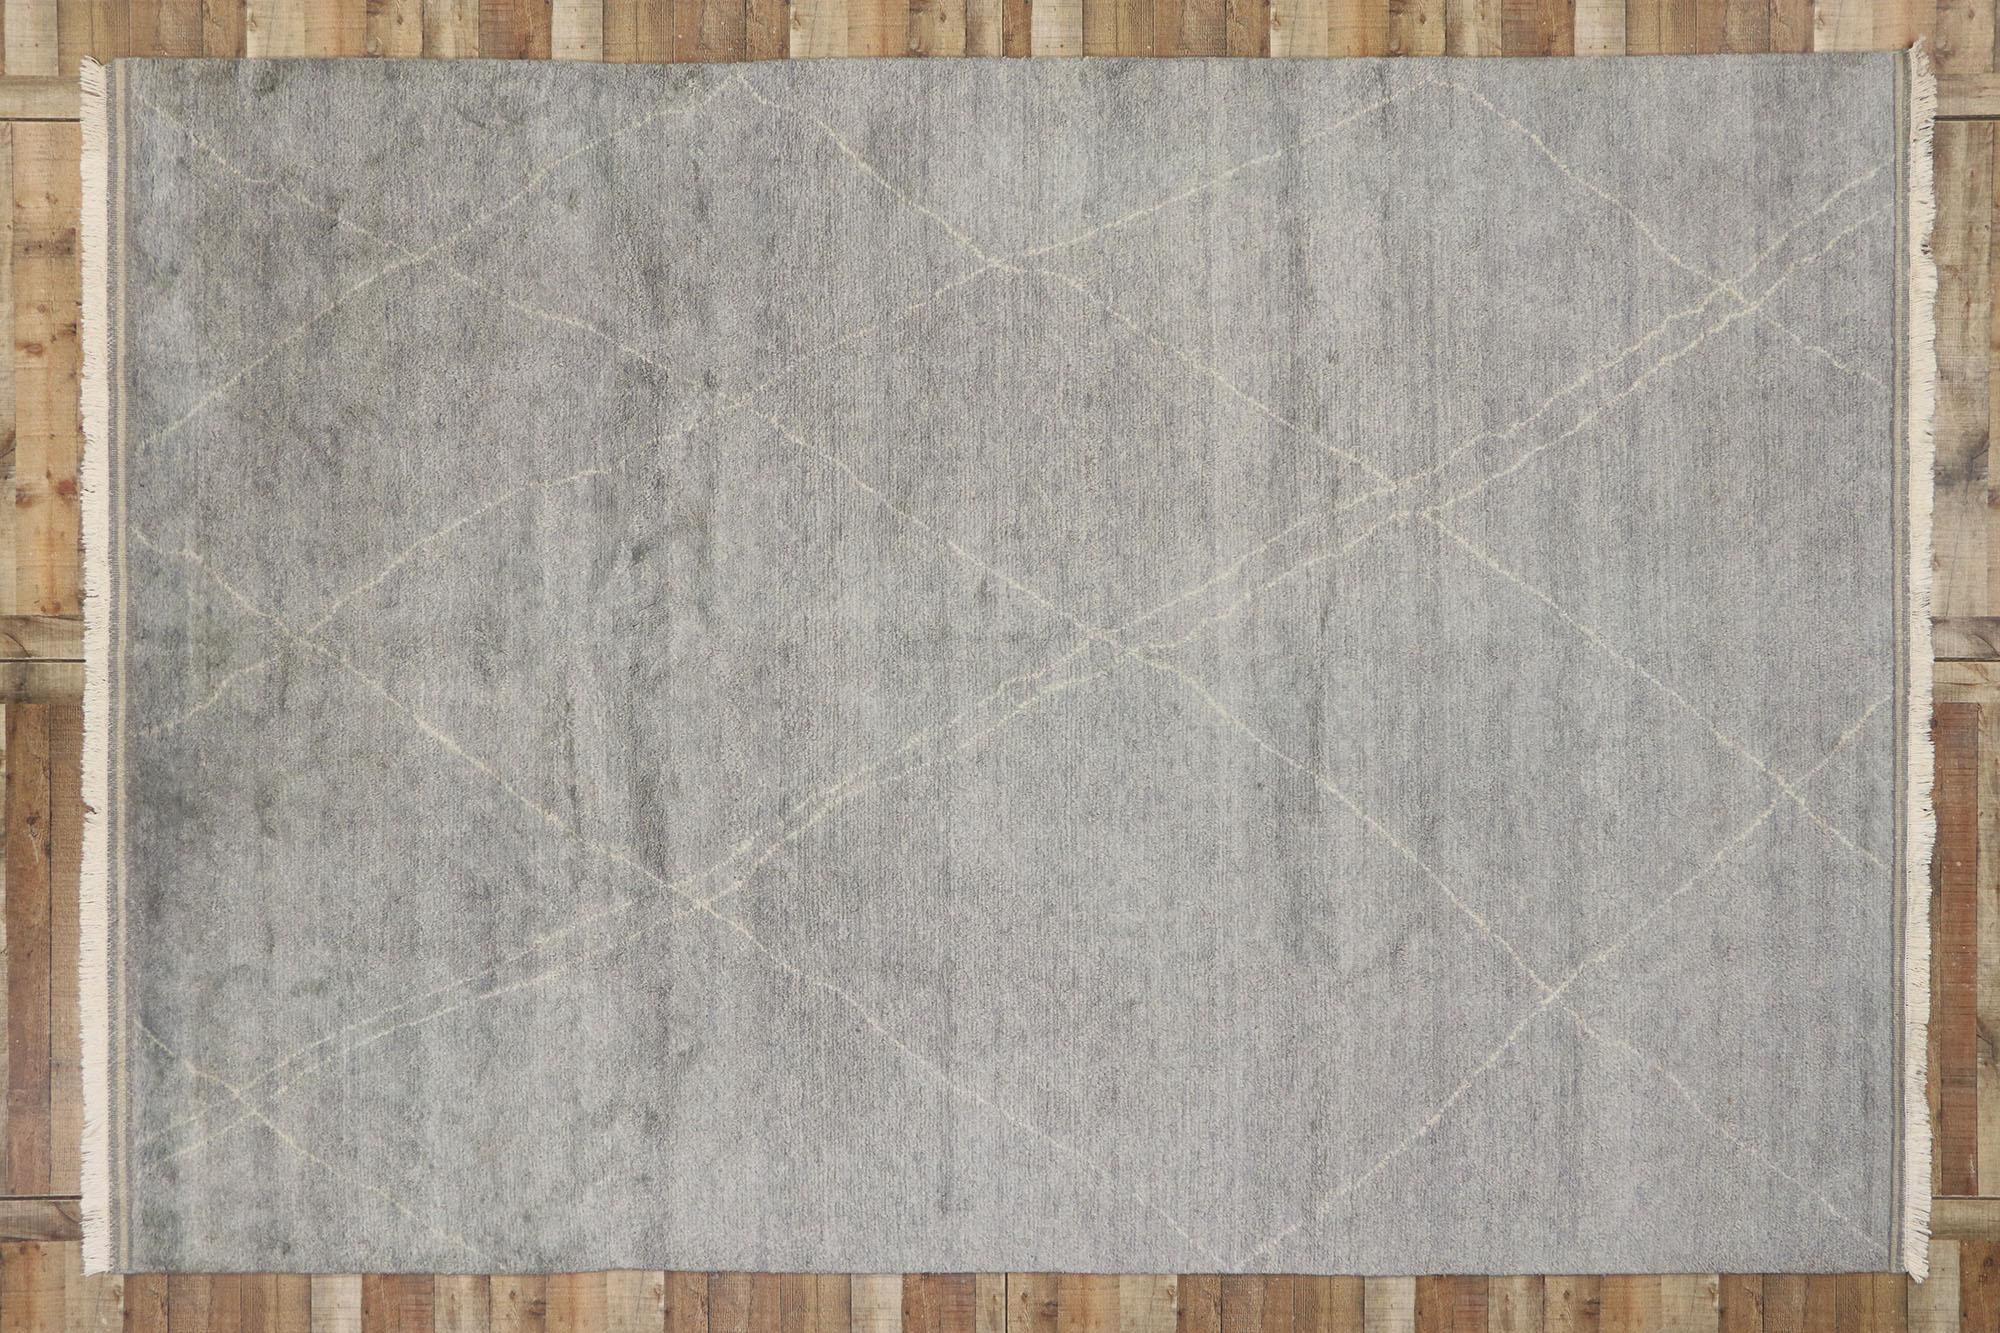 30535, neuer moderner Teppich im marokkanischen Stil mit dänischem Design. Leuchtende Grautöne und reiche Wellen von Abrash schaffen einen endlosen faszinierenden Effekt in diesem handgeknüpften Wollteppich im modernen marokkanischen Stil. Zarte